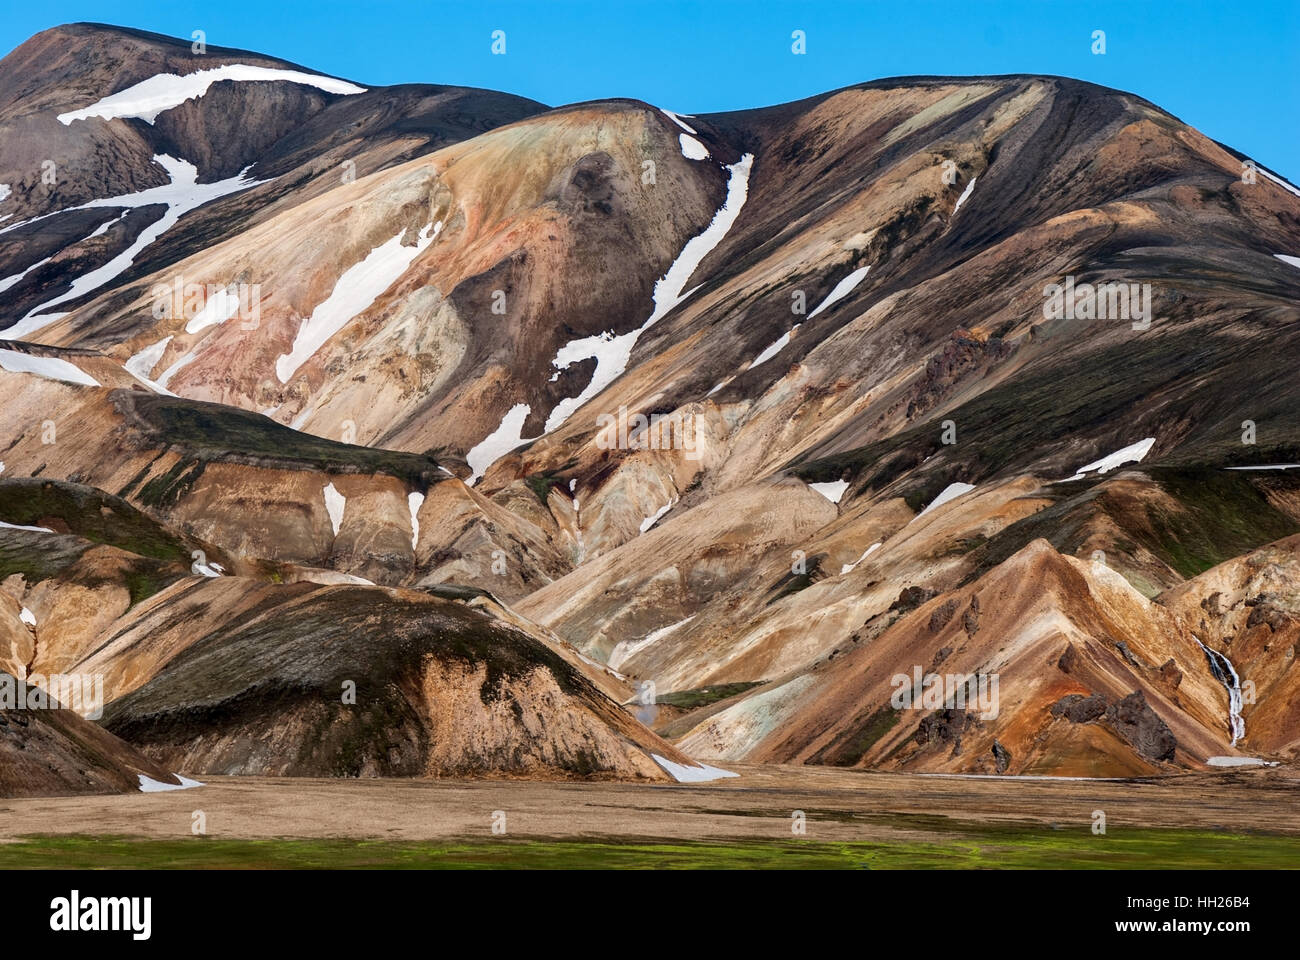 Landmannalaugar est un endroit dans la réserve naturelle de Fjallabak dans les hautes terres d'Islande. Banque D'Images